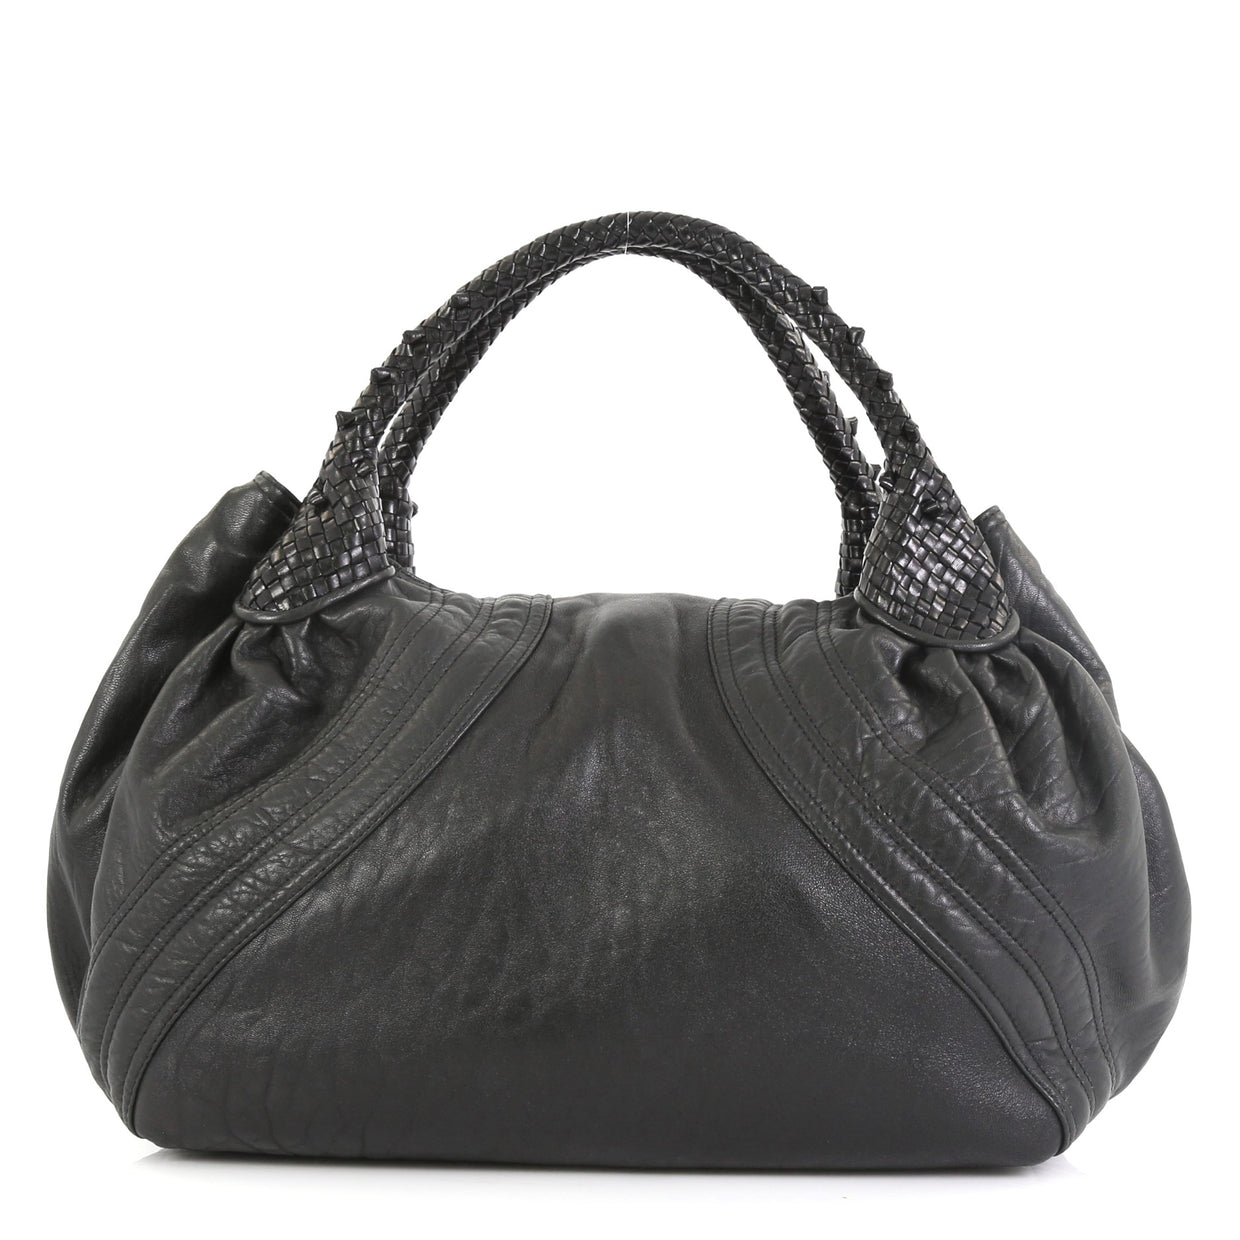 Fendi Spy Bag Leather - Rebag